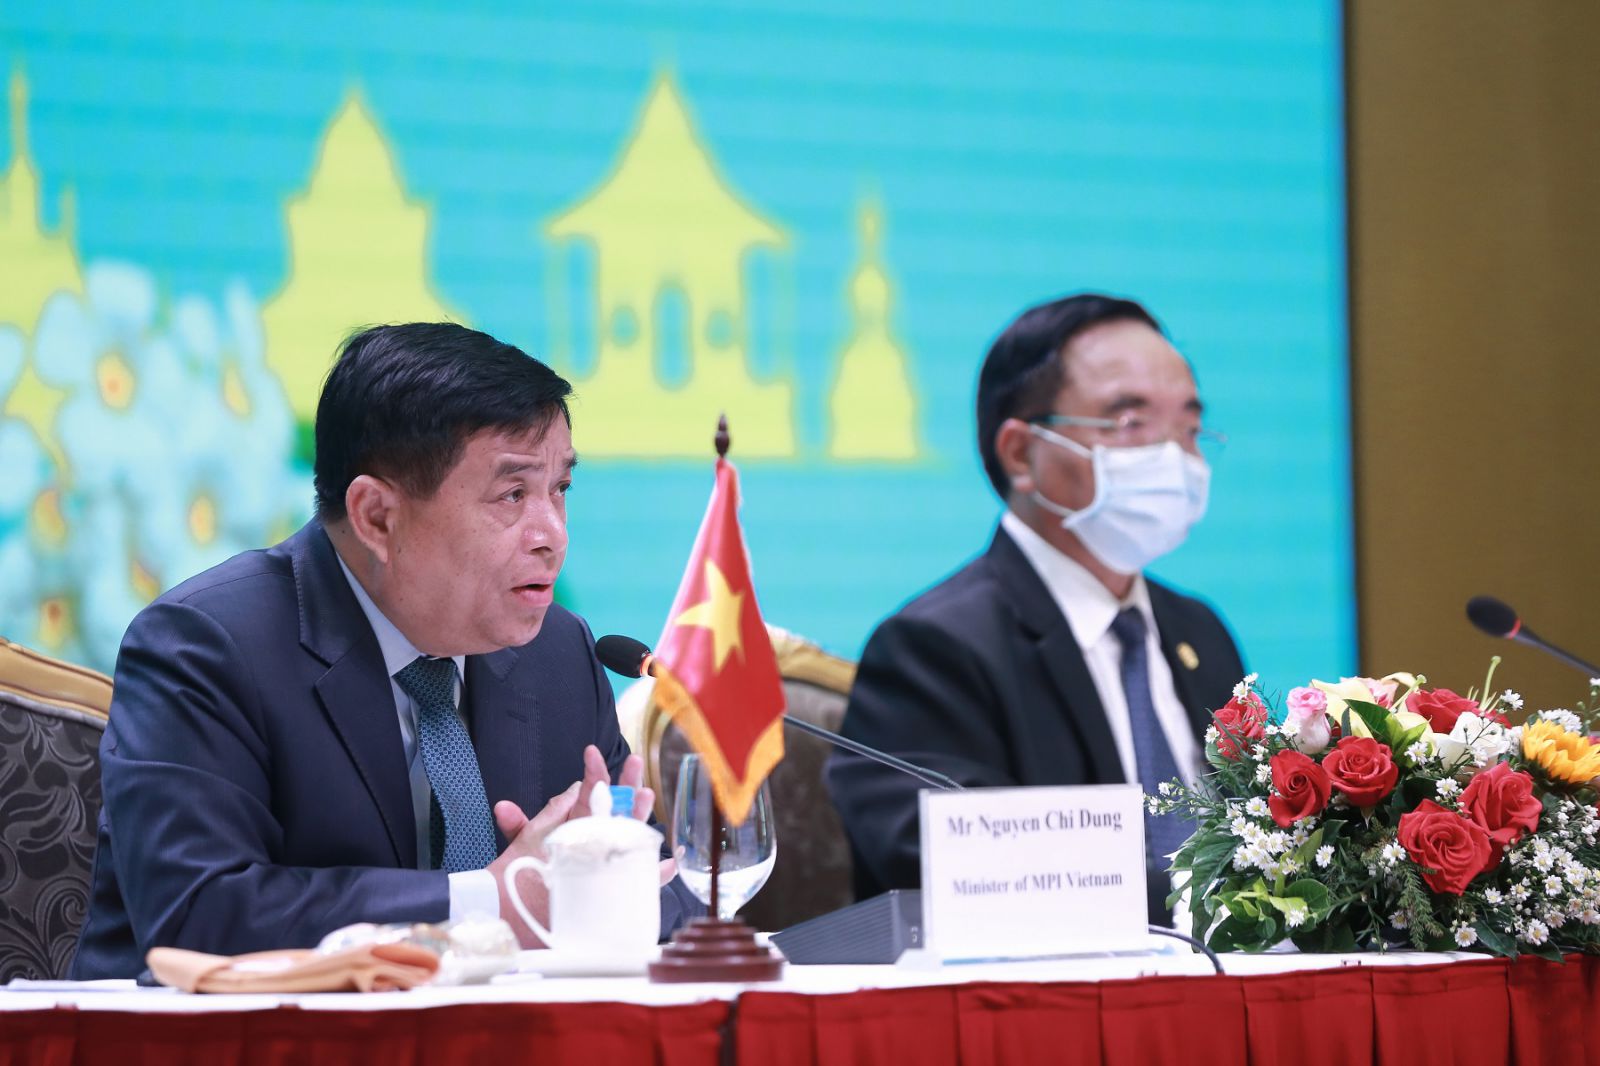 Ảnh 3: Ông Nguyễn Chí Dũng, Bộ trưởng Bộ Kế hoạch & Đầu tư Việt Nam